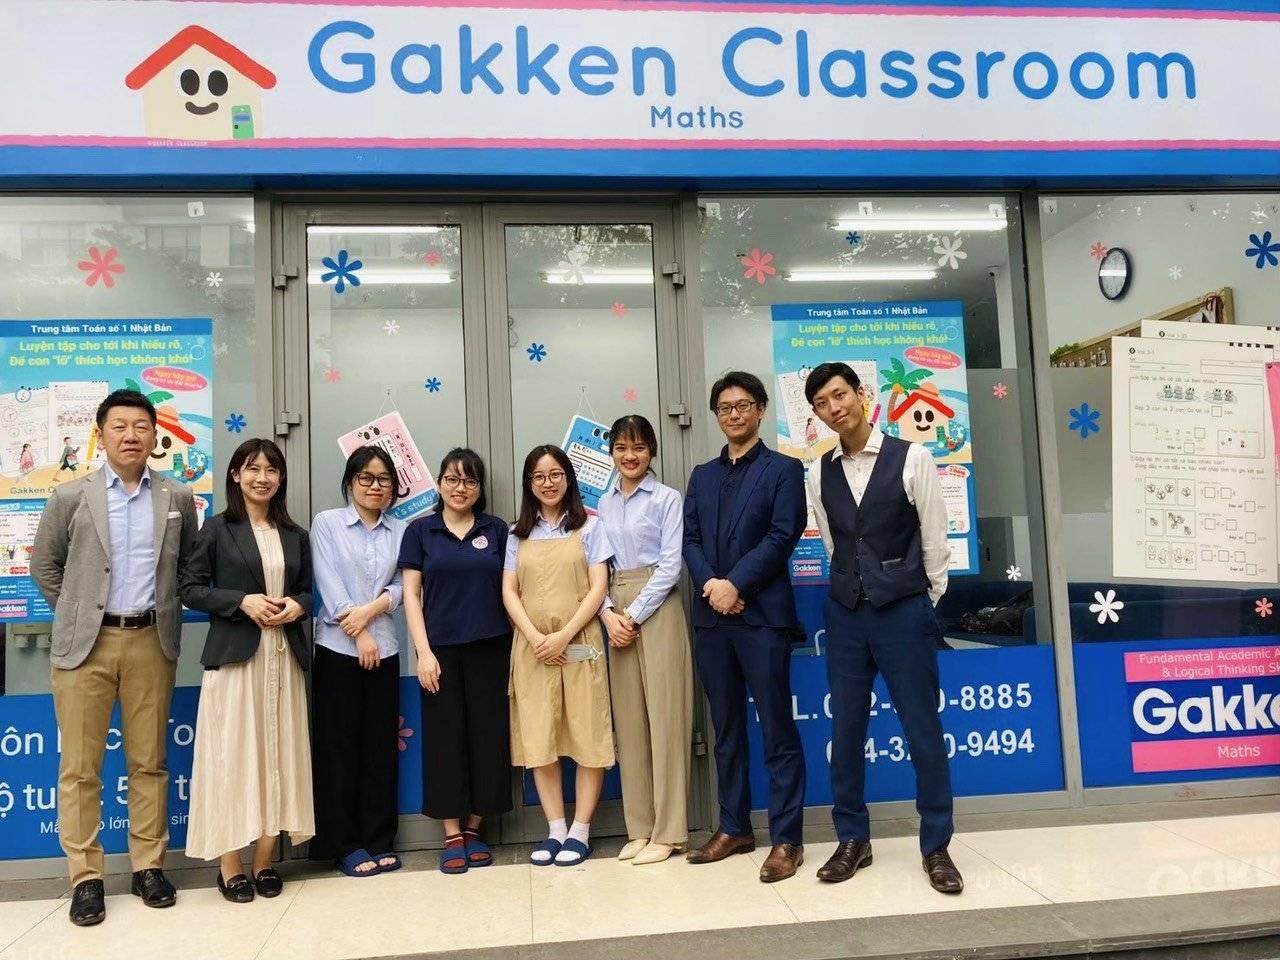 Trung Tâm Toán Số 1 Nhật Bản Gakken Classroom